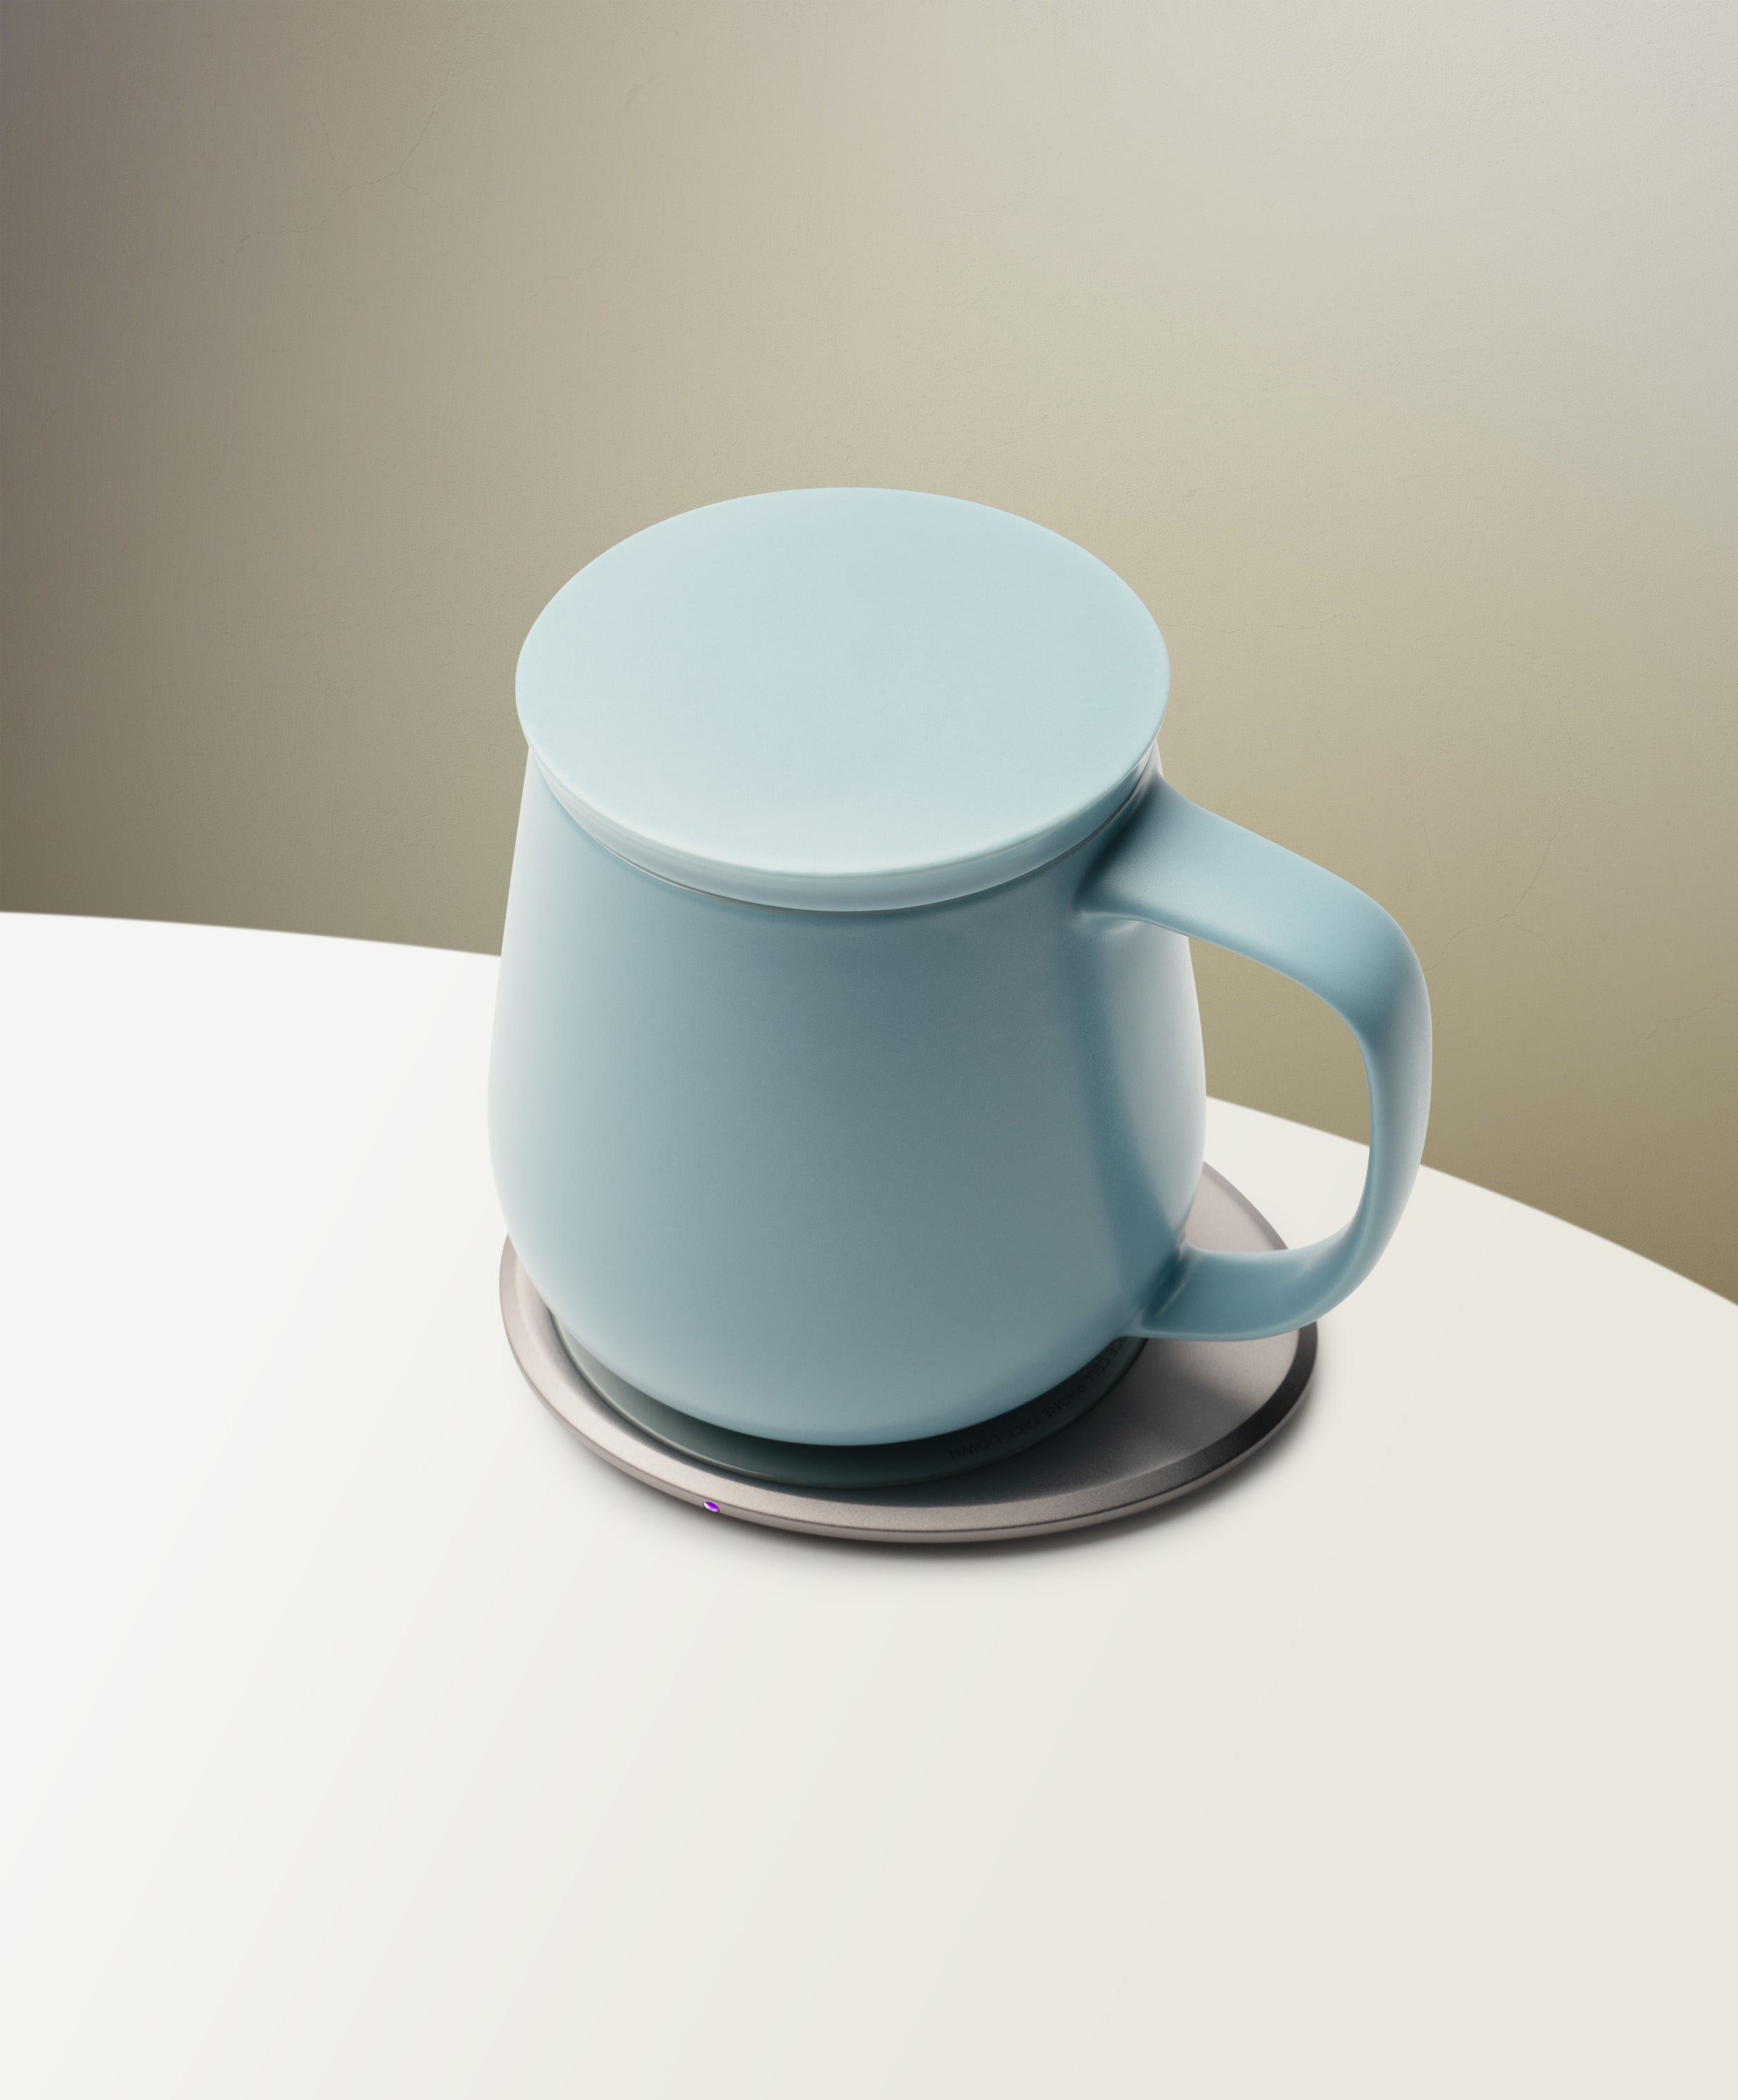 Ui+ Self-heating Mug Set - Moonmist Blue